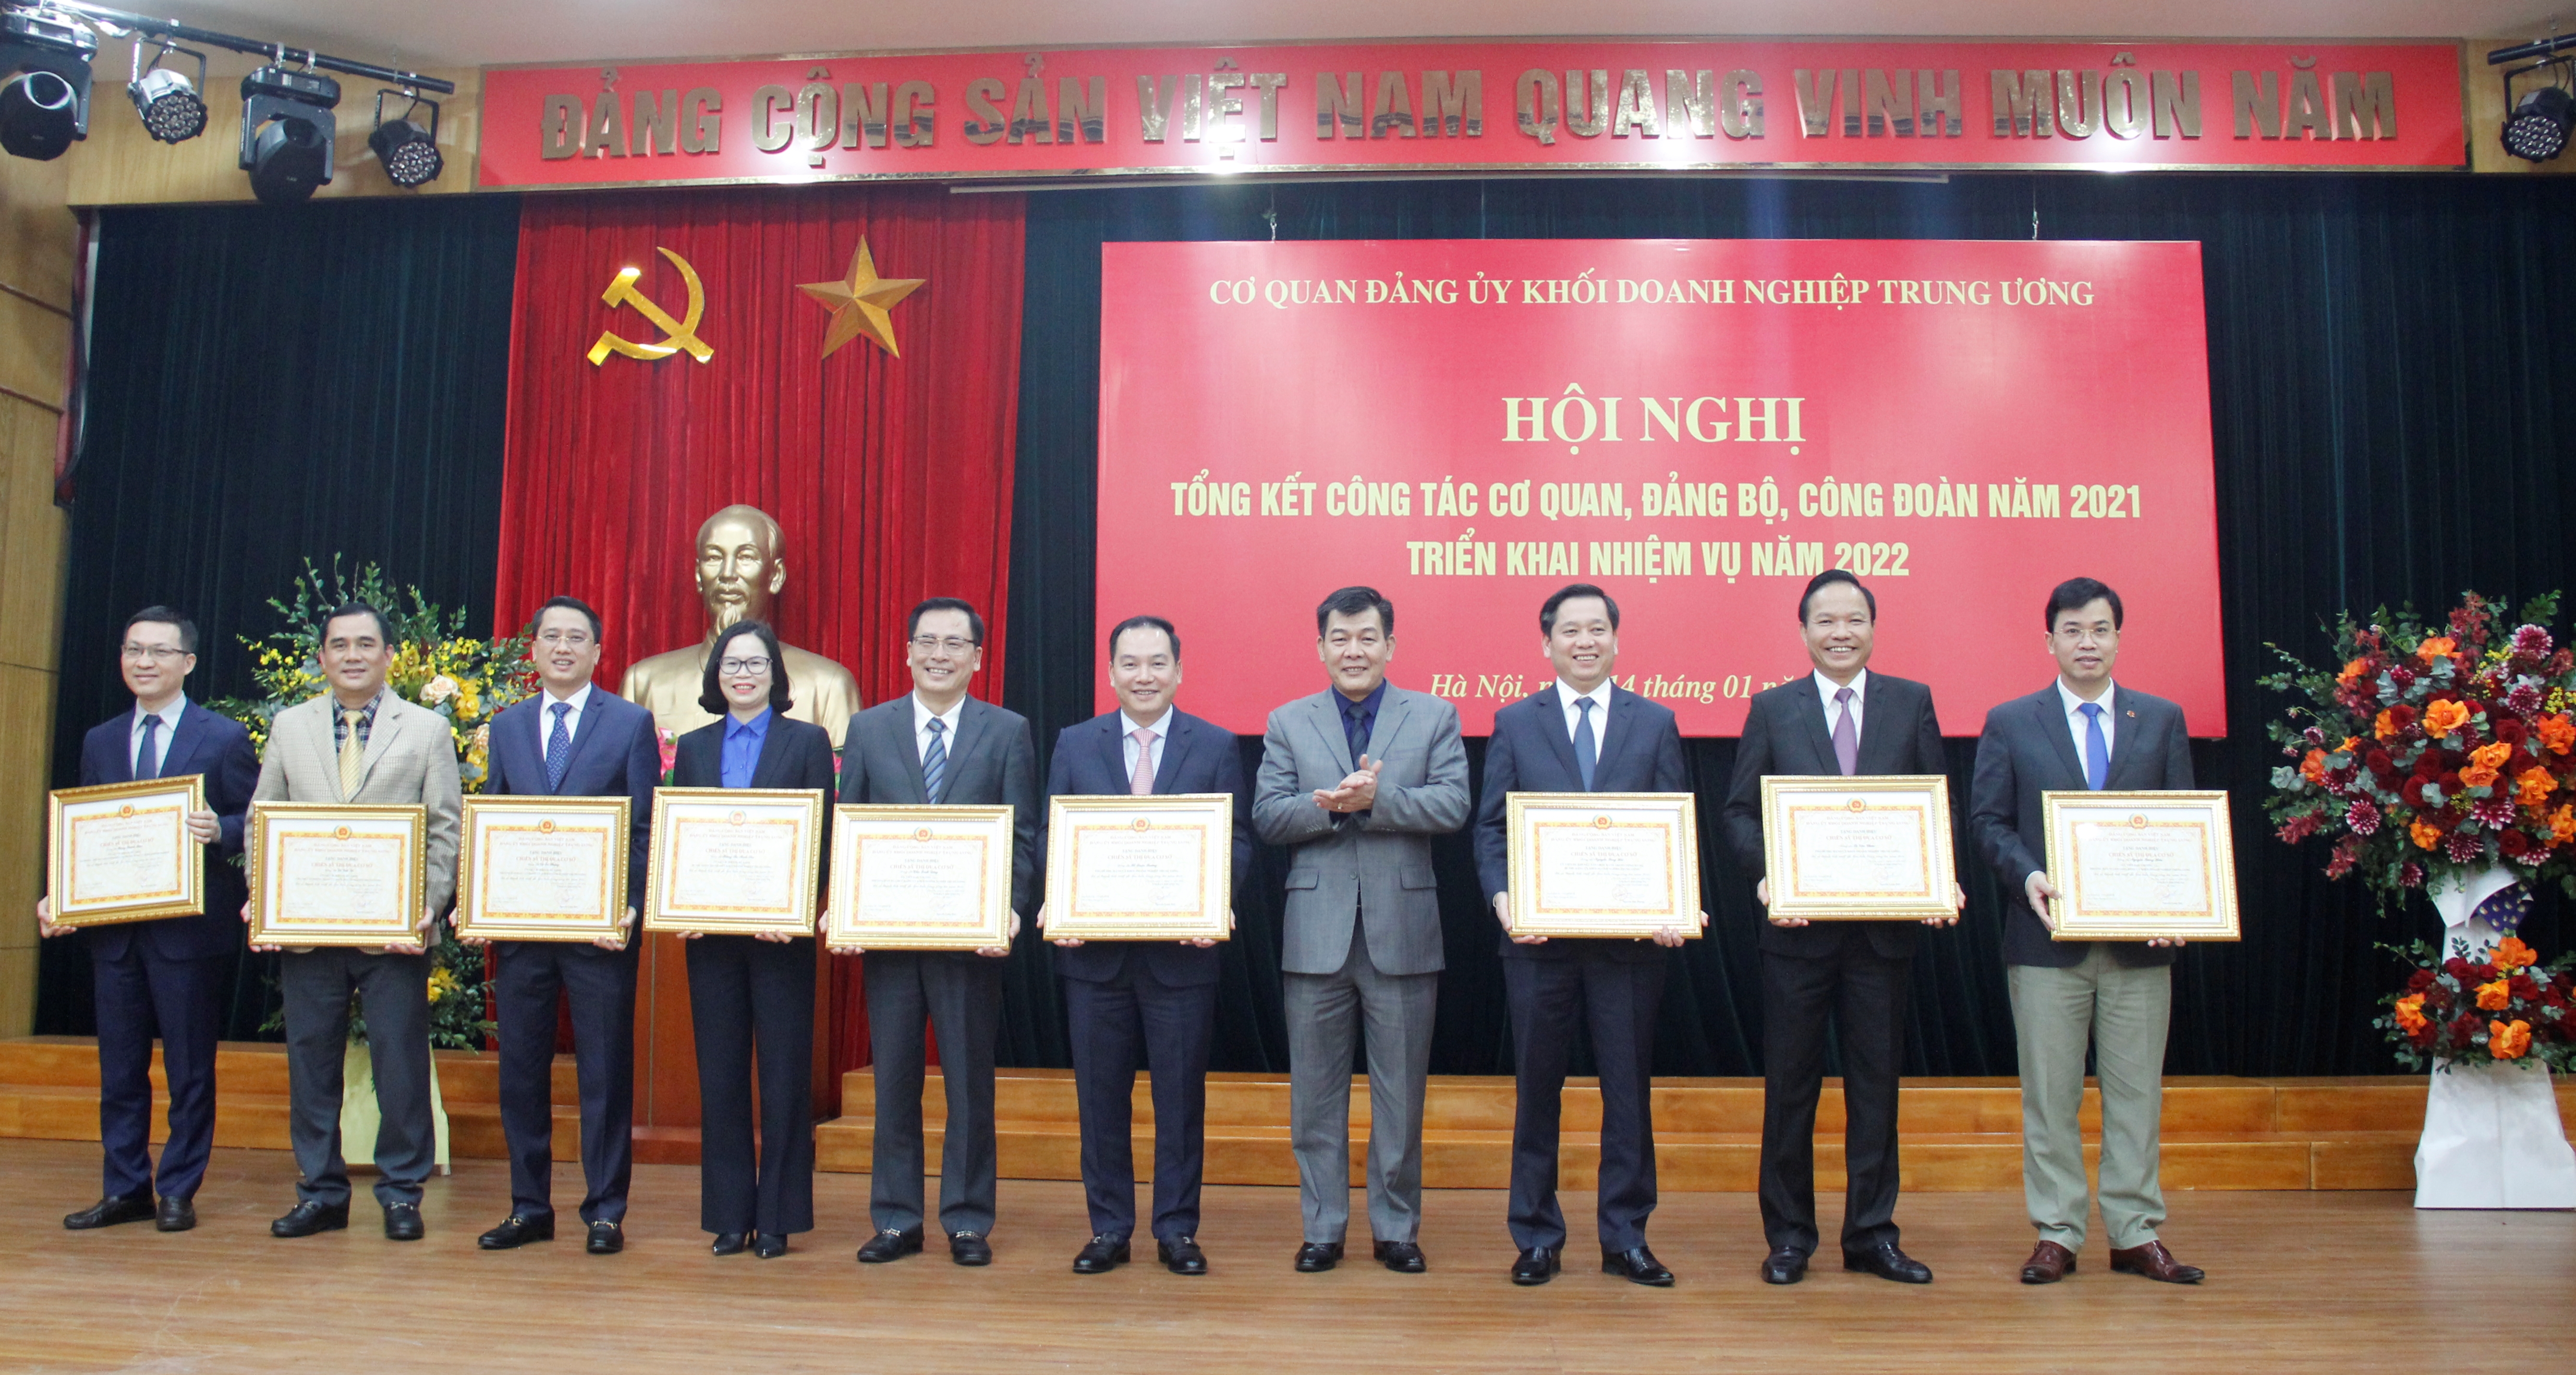 Đồng chí Nguyễn Đức Phong, Phó Bí thư Thường trực Đảng ủy Khối trao chứng nhận cho các cá nhân đạt danh hiệu “Chiến sĩ thi đua cơ sở” năm 2021.